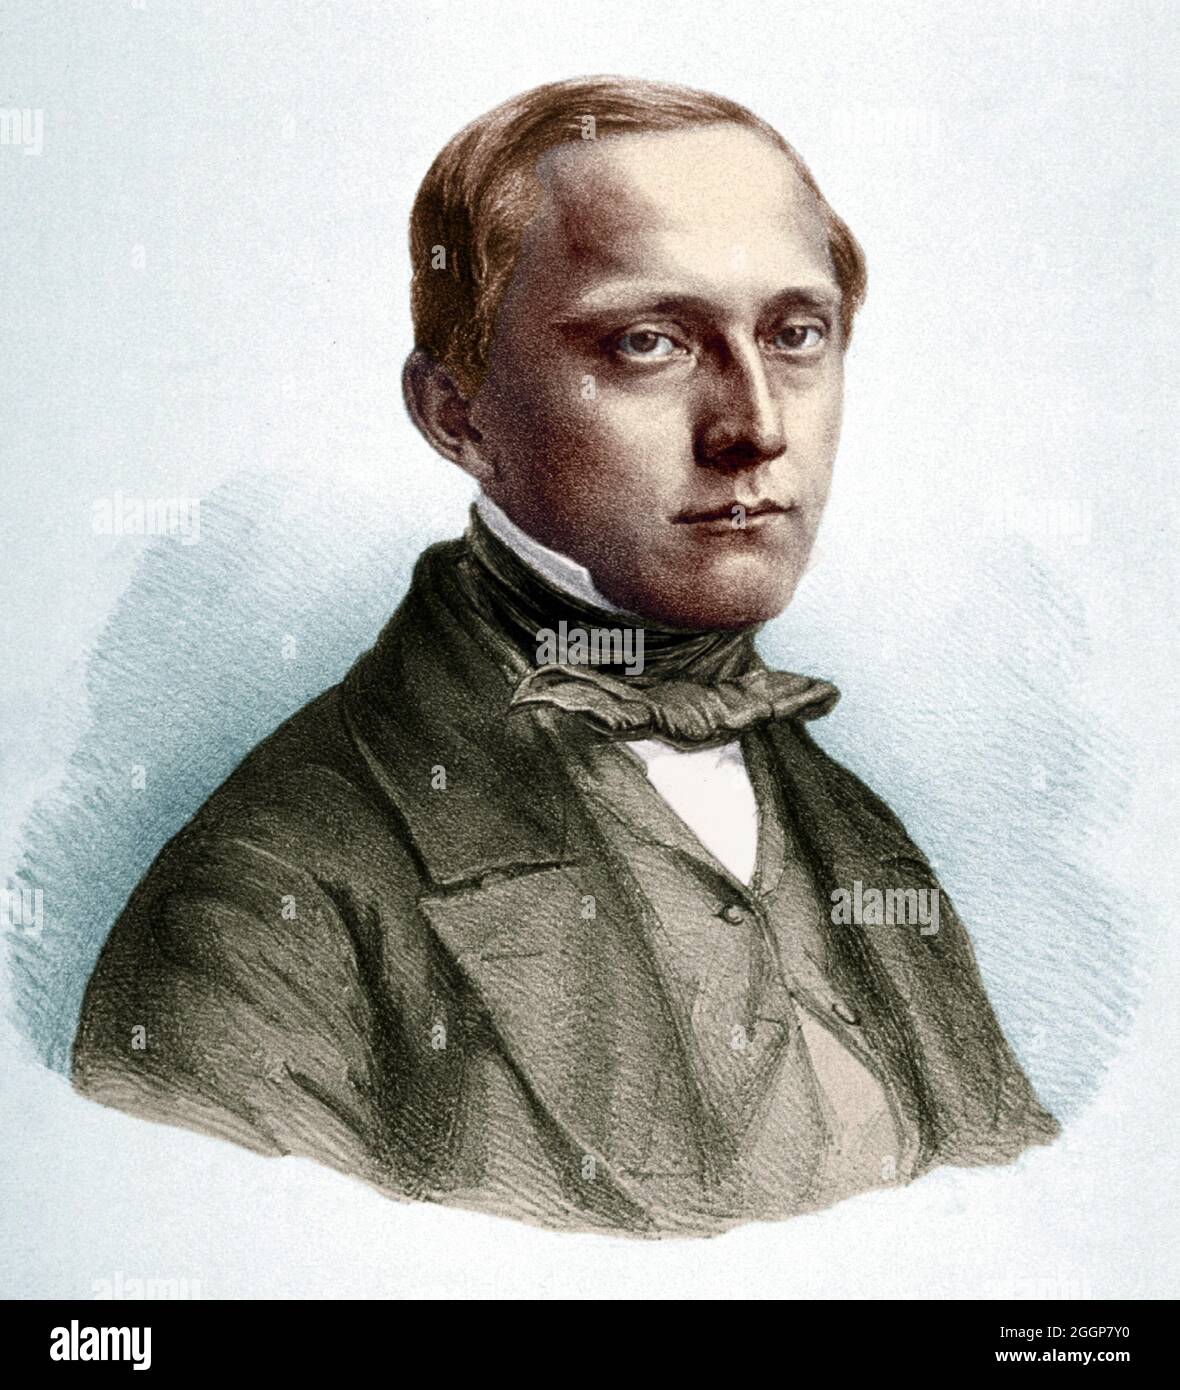 Ritratto colorato di Rudolph Carl Virchow (1821-1902), patologo tedesco e avvocato della sanità pubblica. Foto Stock